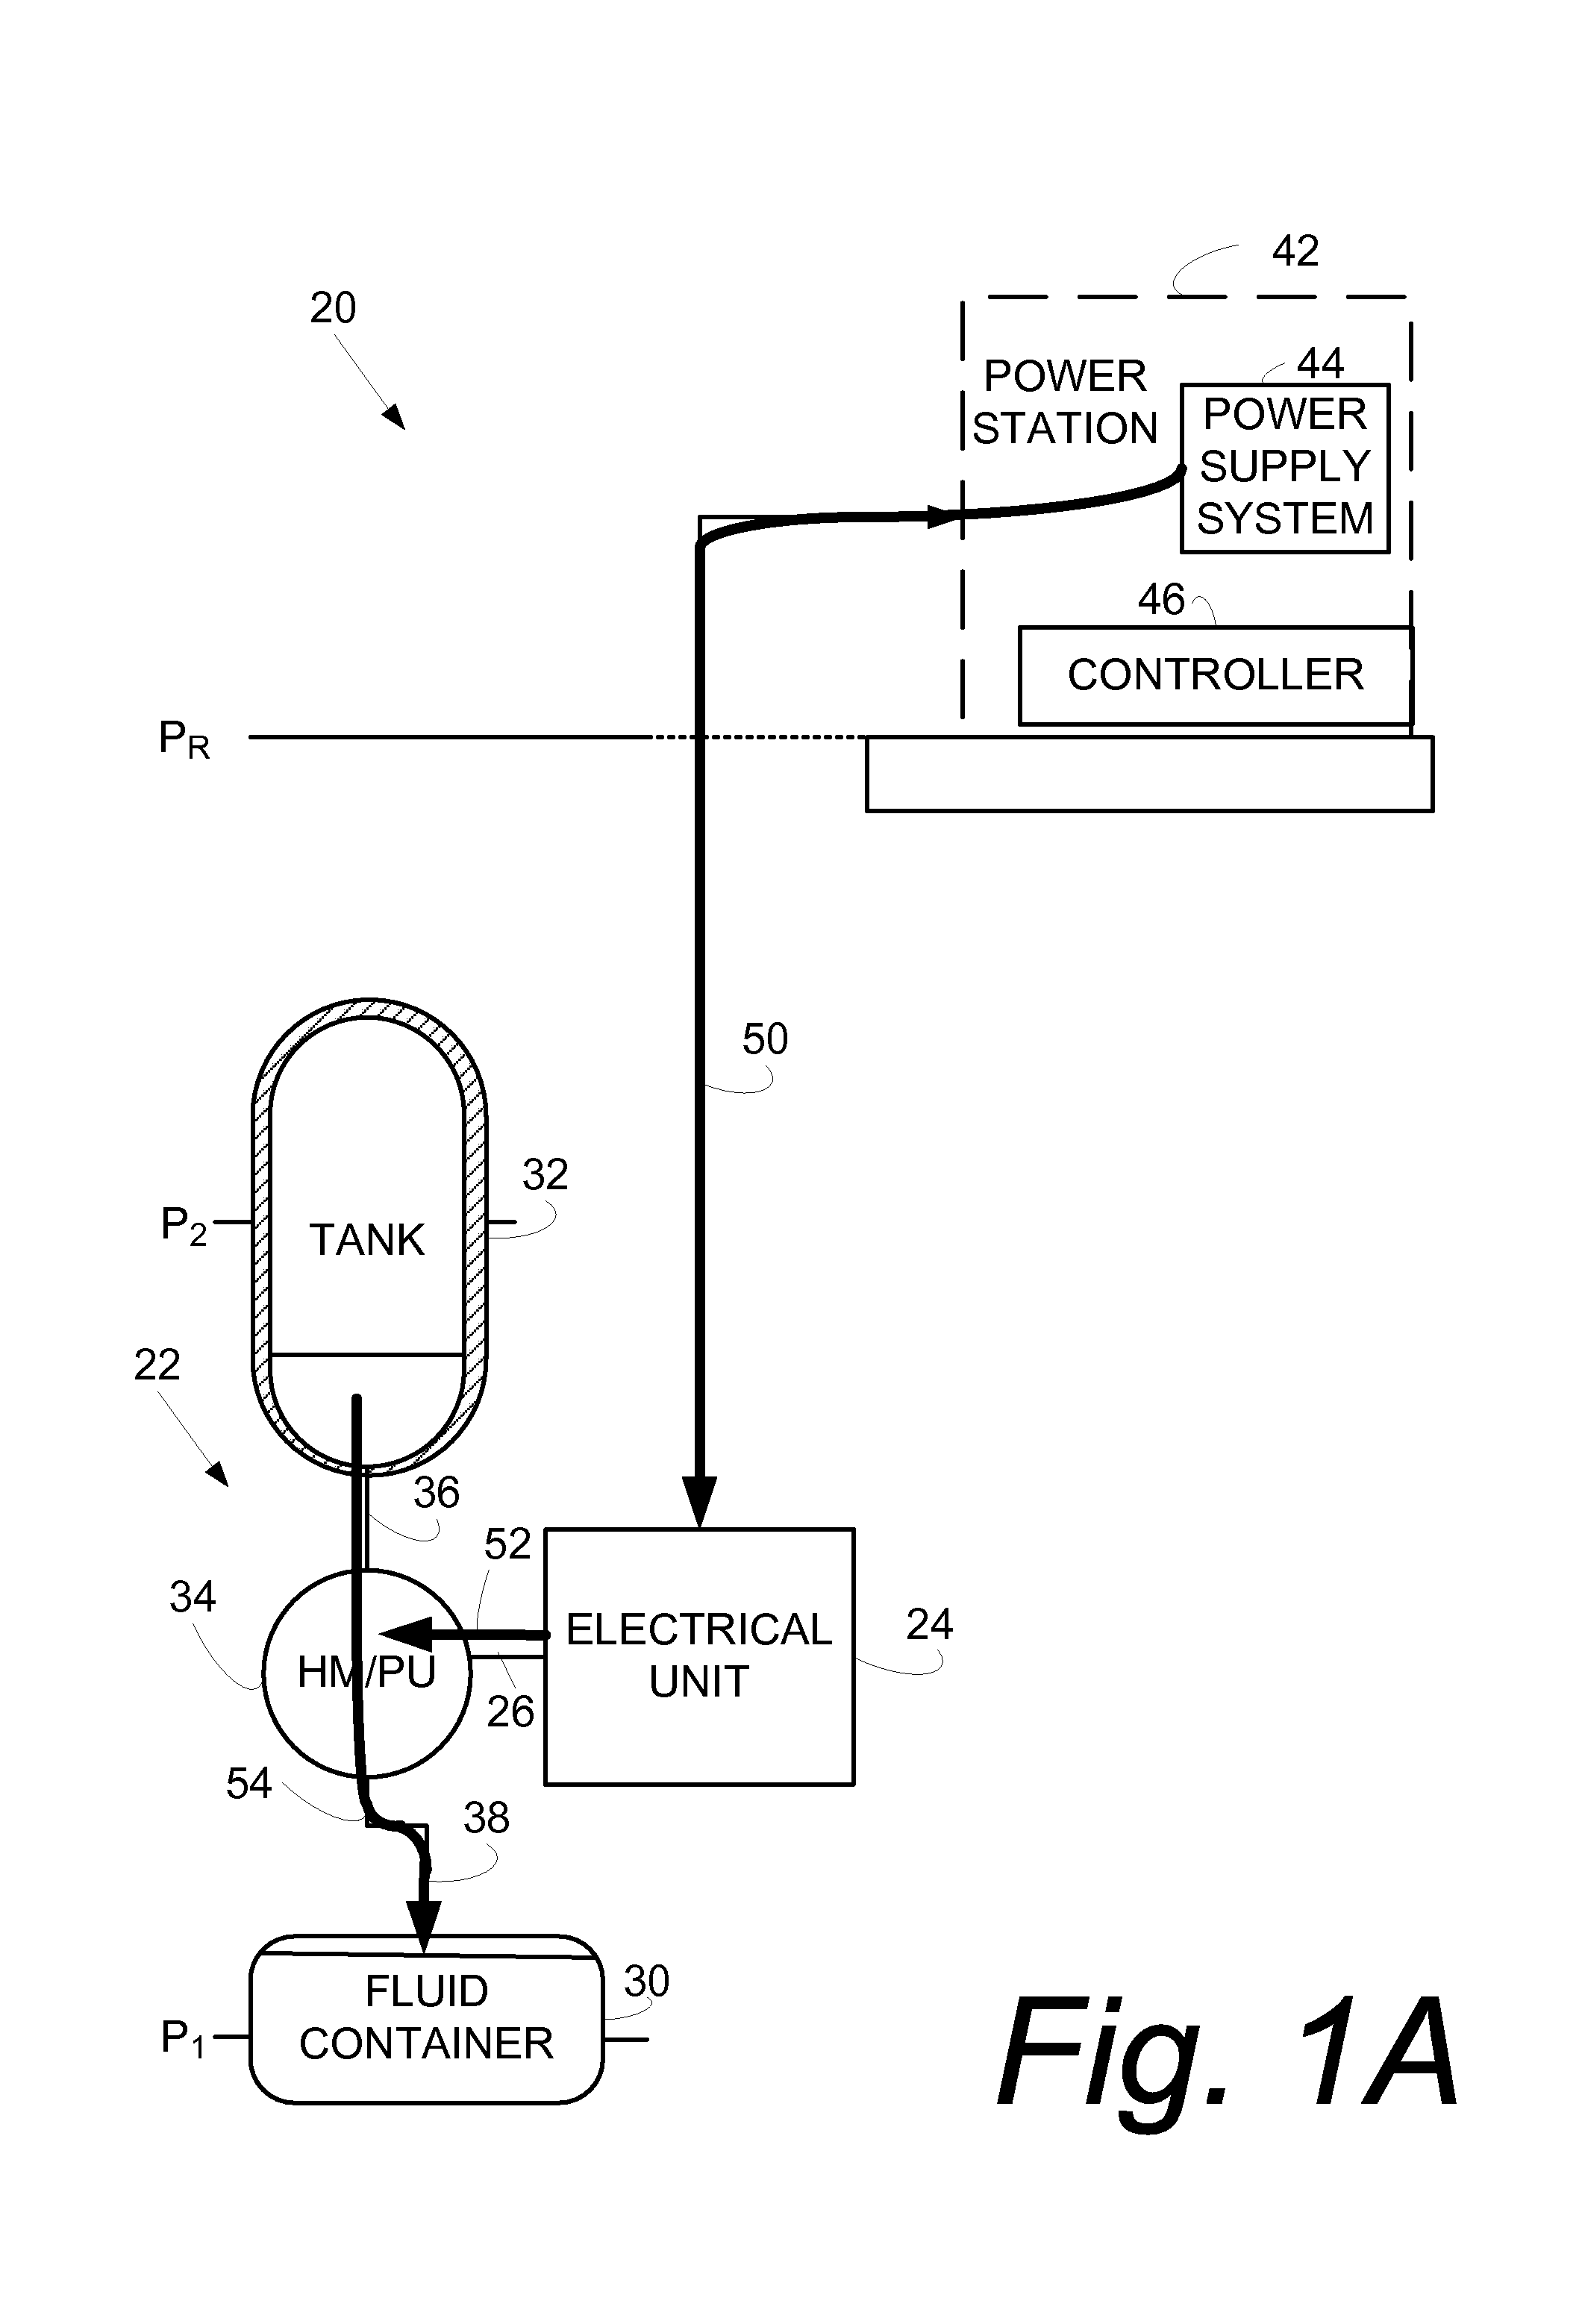 Hydraulic energy accumulator